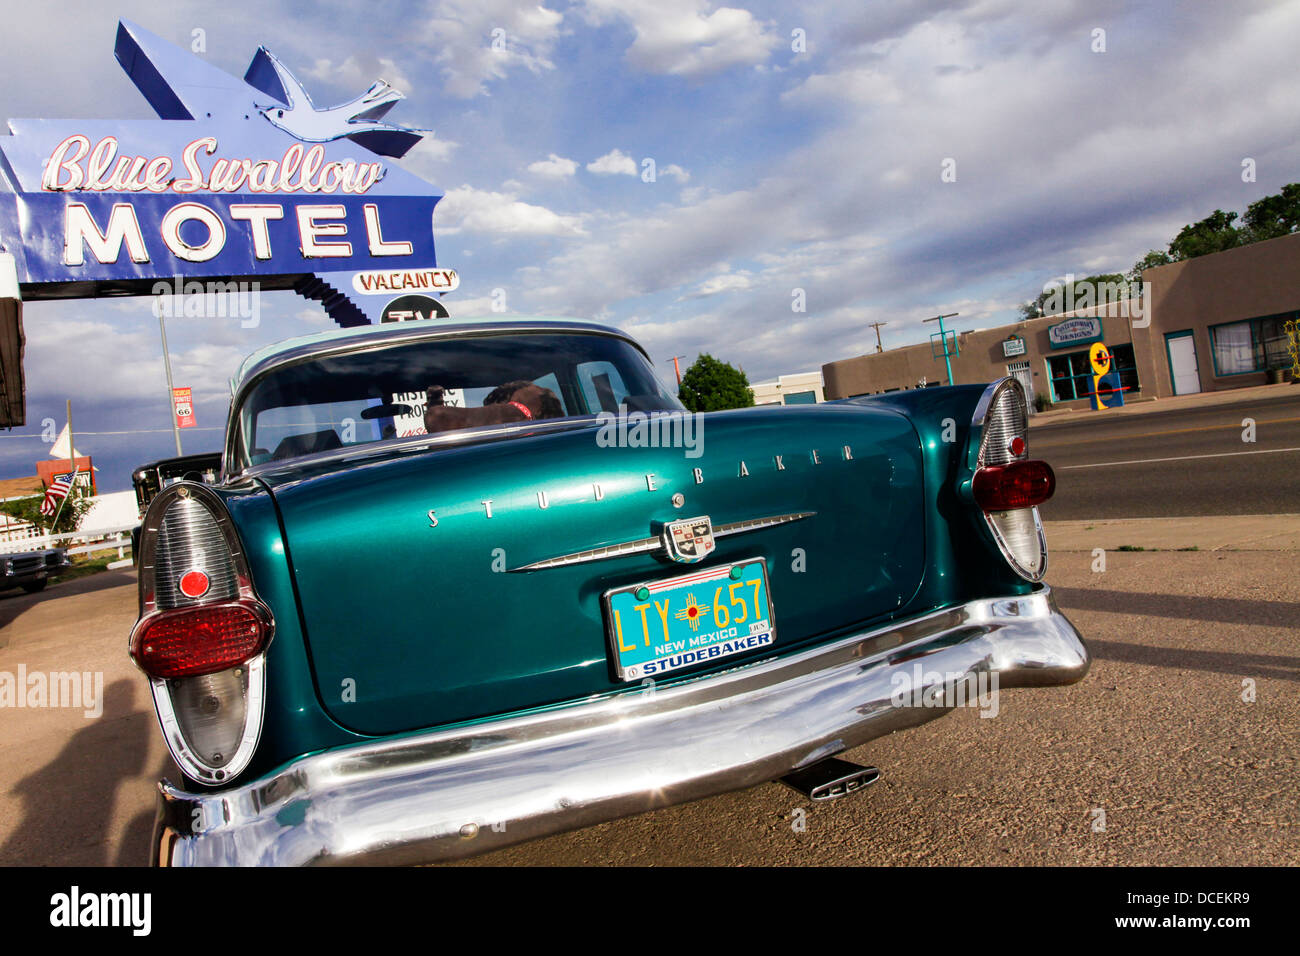 Tucumcari, New Mexico, United States. Route 66. Historic Blue Swallow Motel. Stock Photo